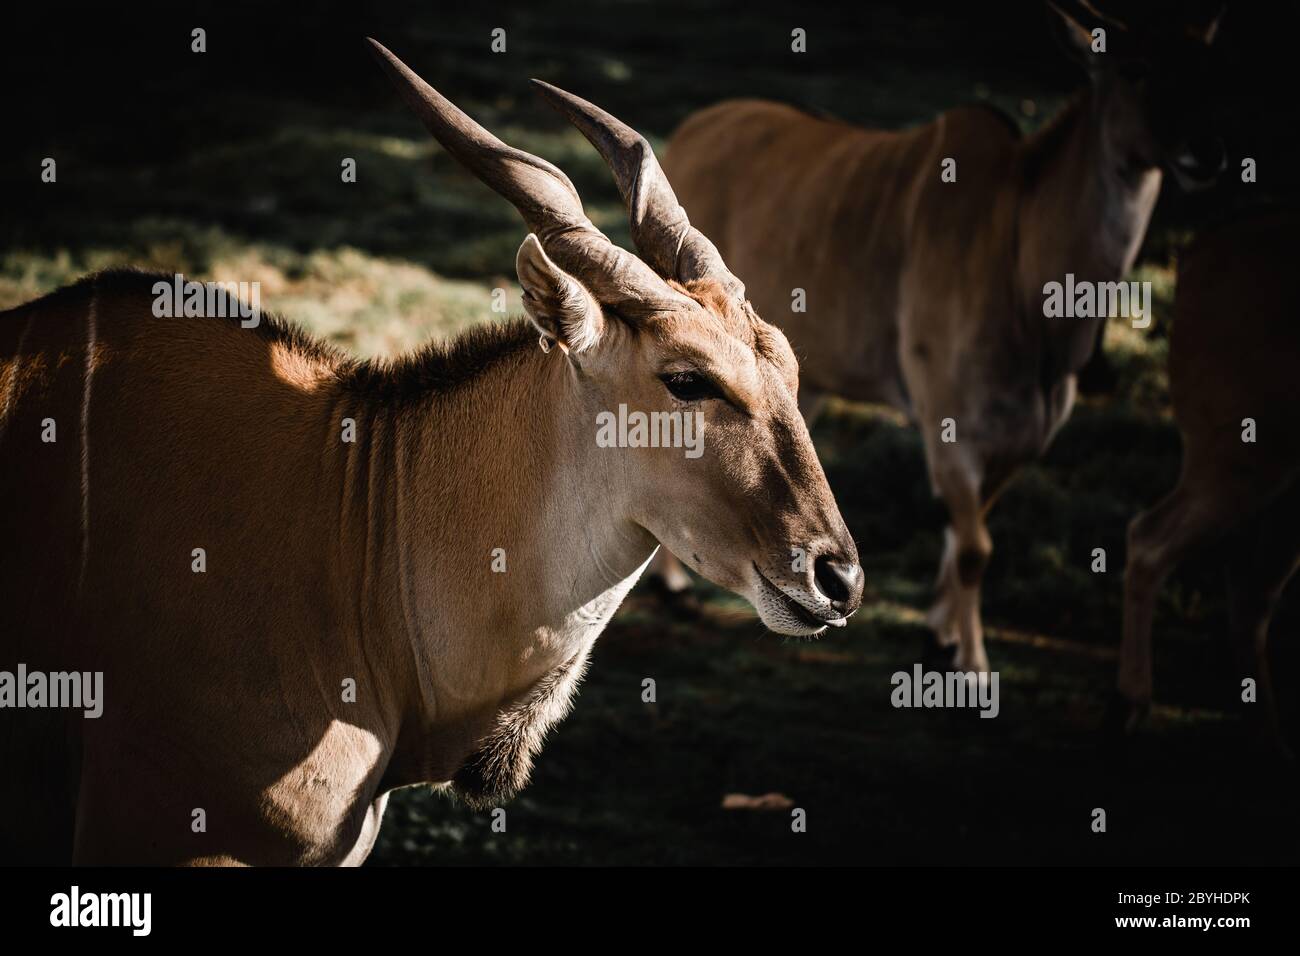 La tête d'un Antelope Eland (Taurotragus oryx) avec d'autres animaux de la terre derrière lui, les cornes et le visage des elands sont illuminés Banque D'Images